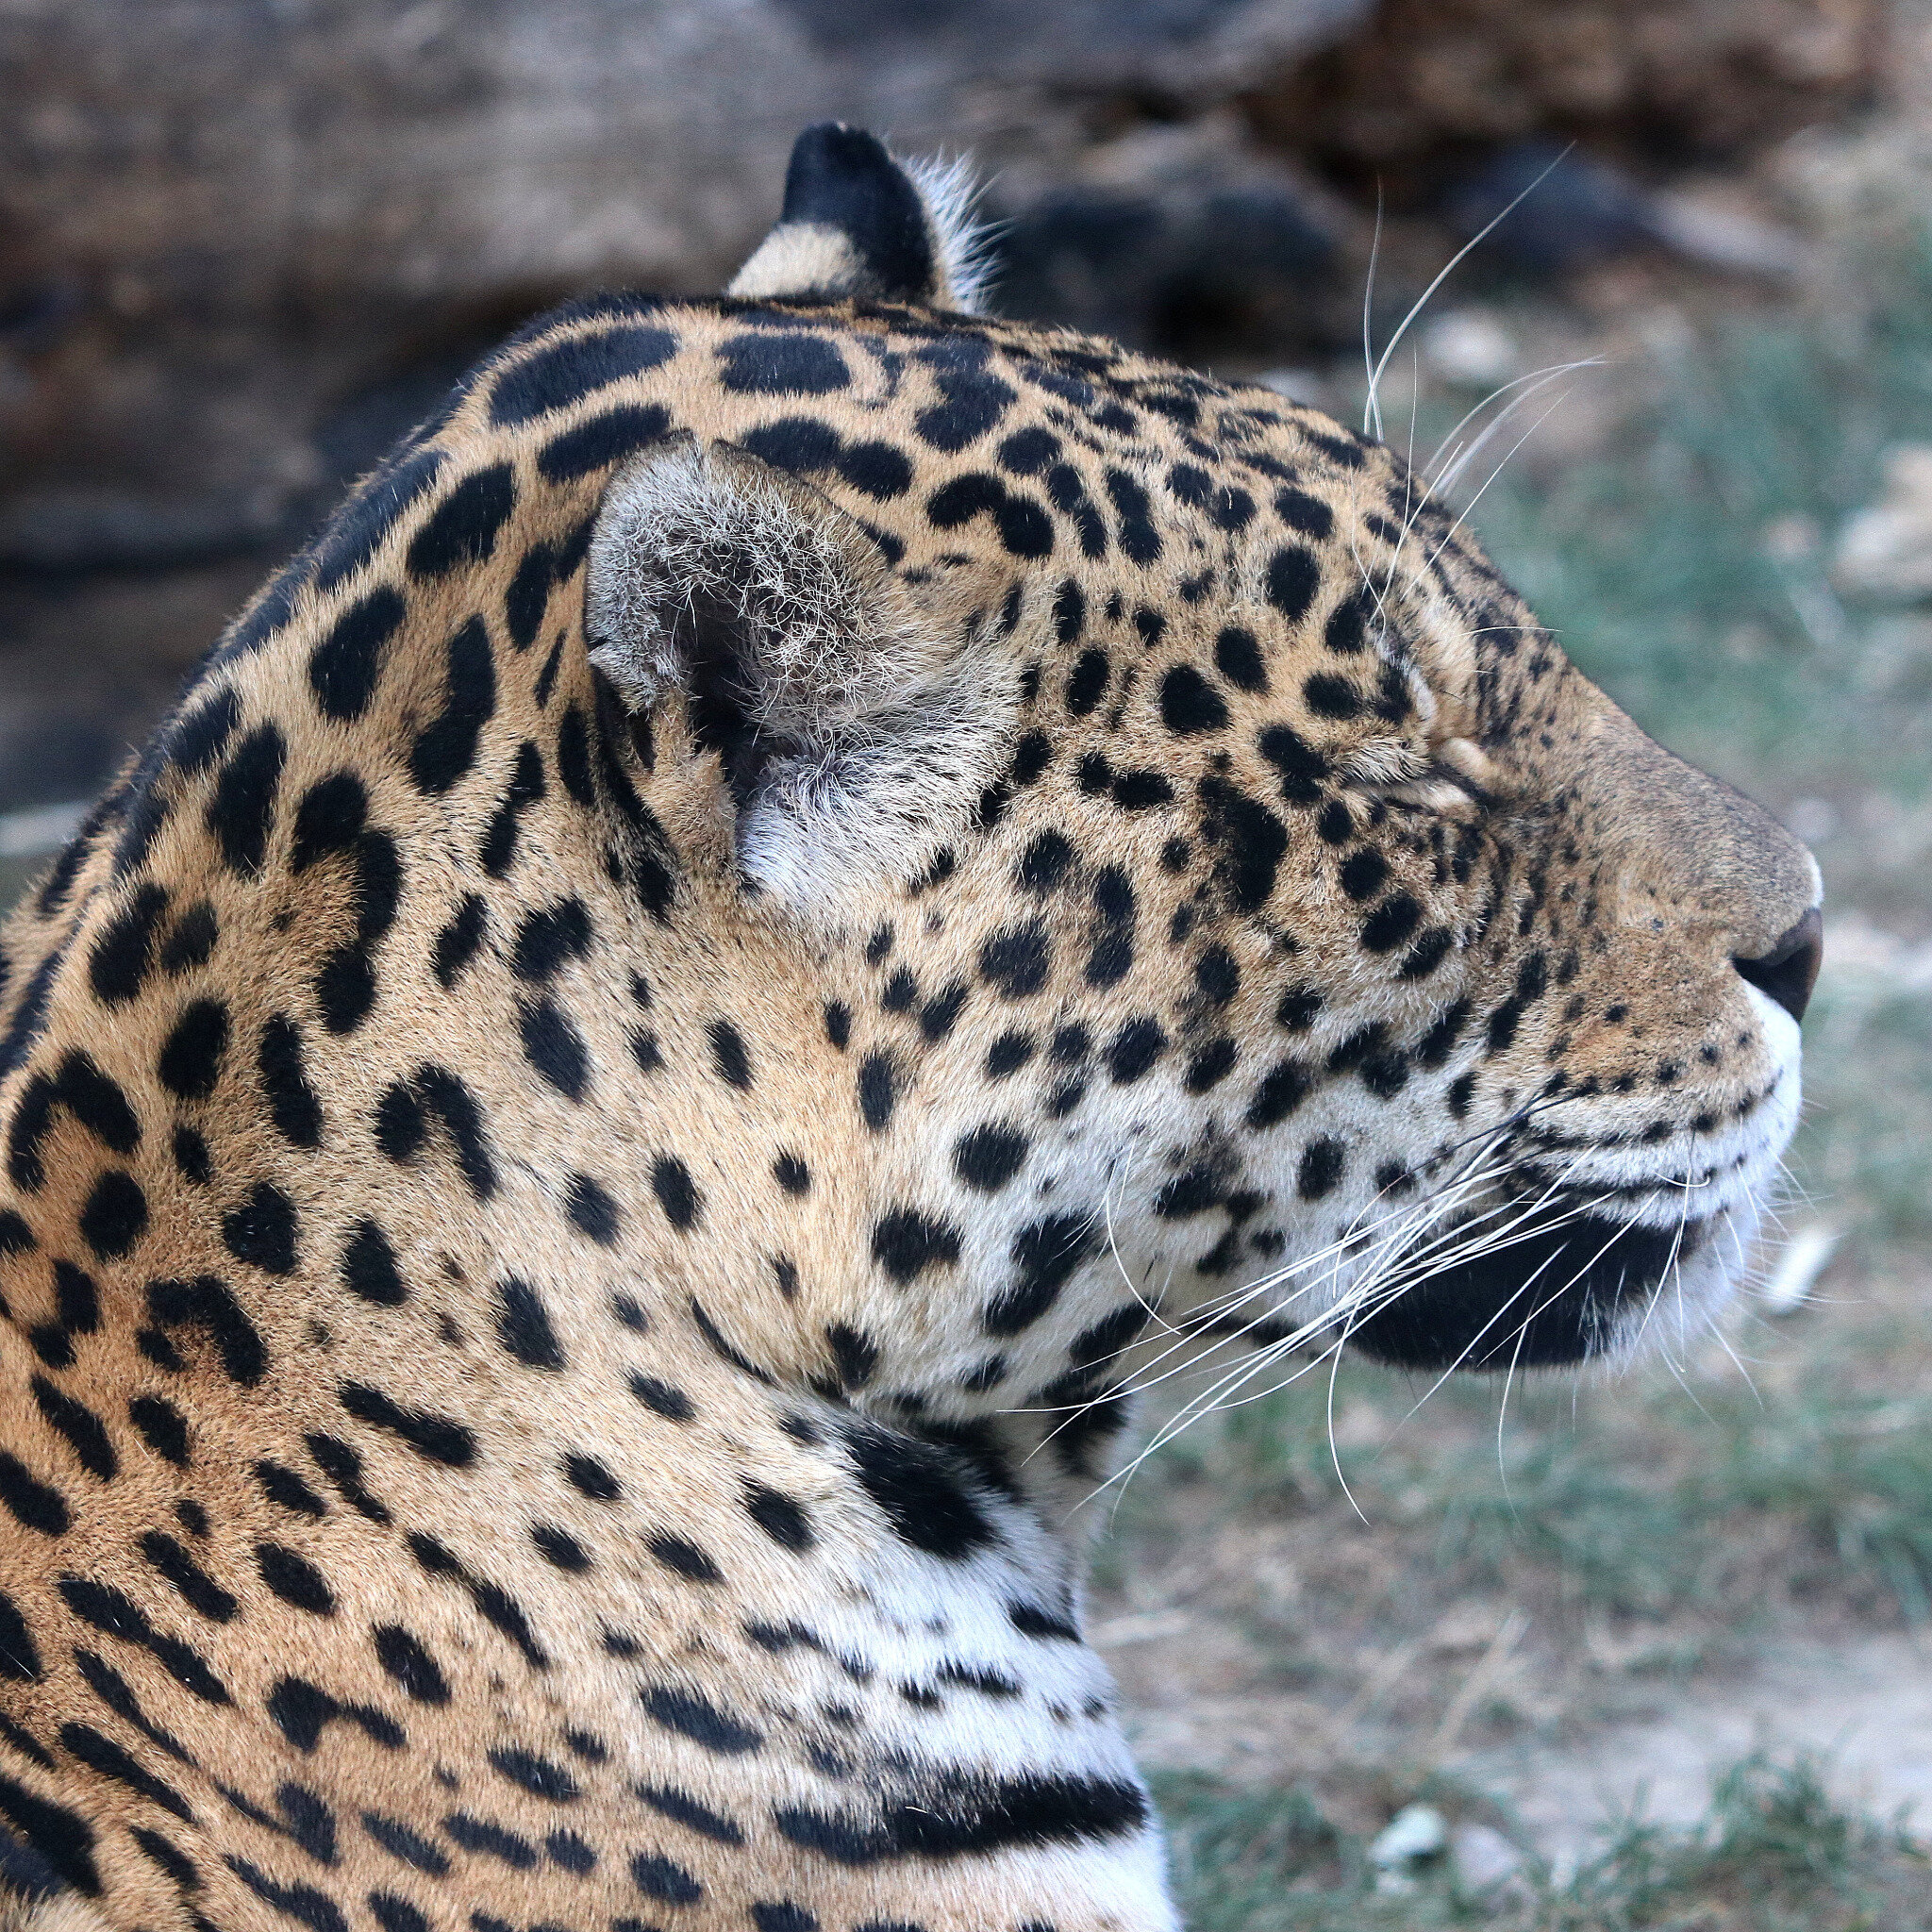  Jaguar  La faune au fil des randos